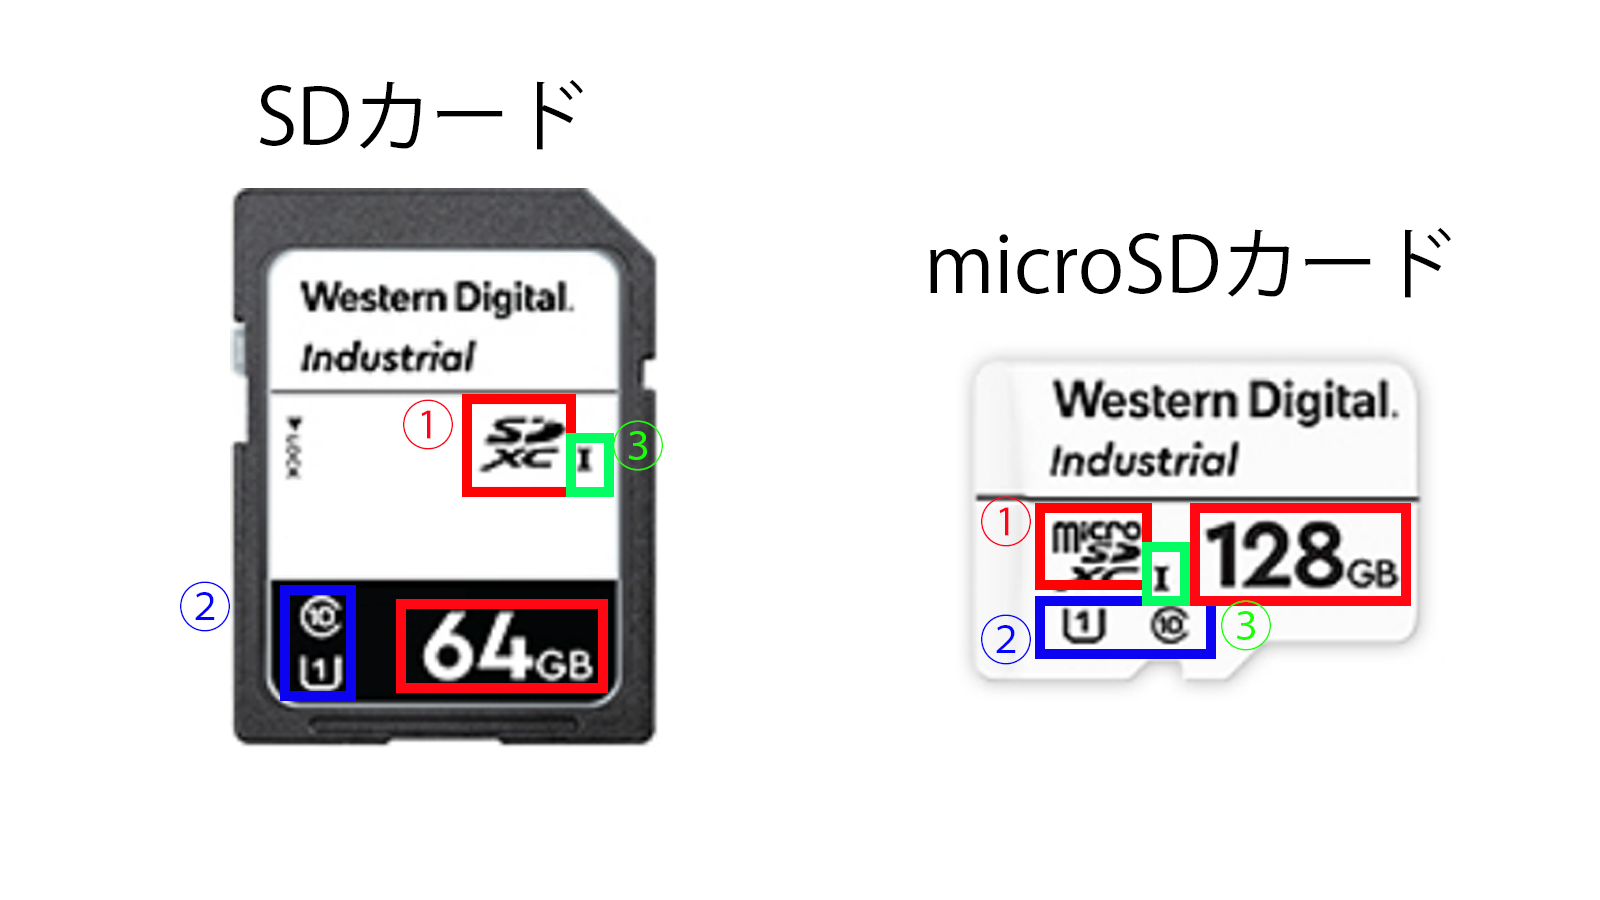 SDカードとmicroSDカードのラベルの見方